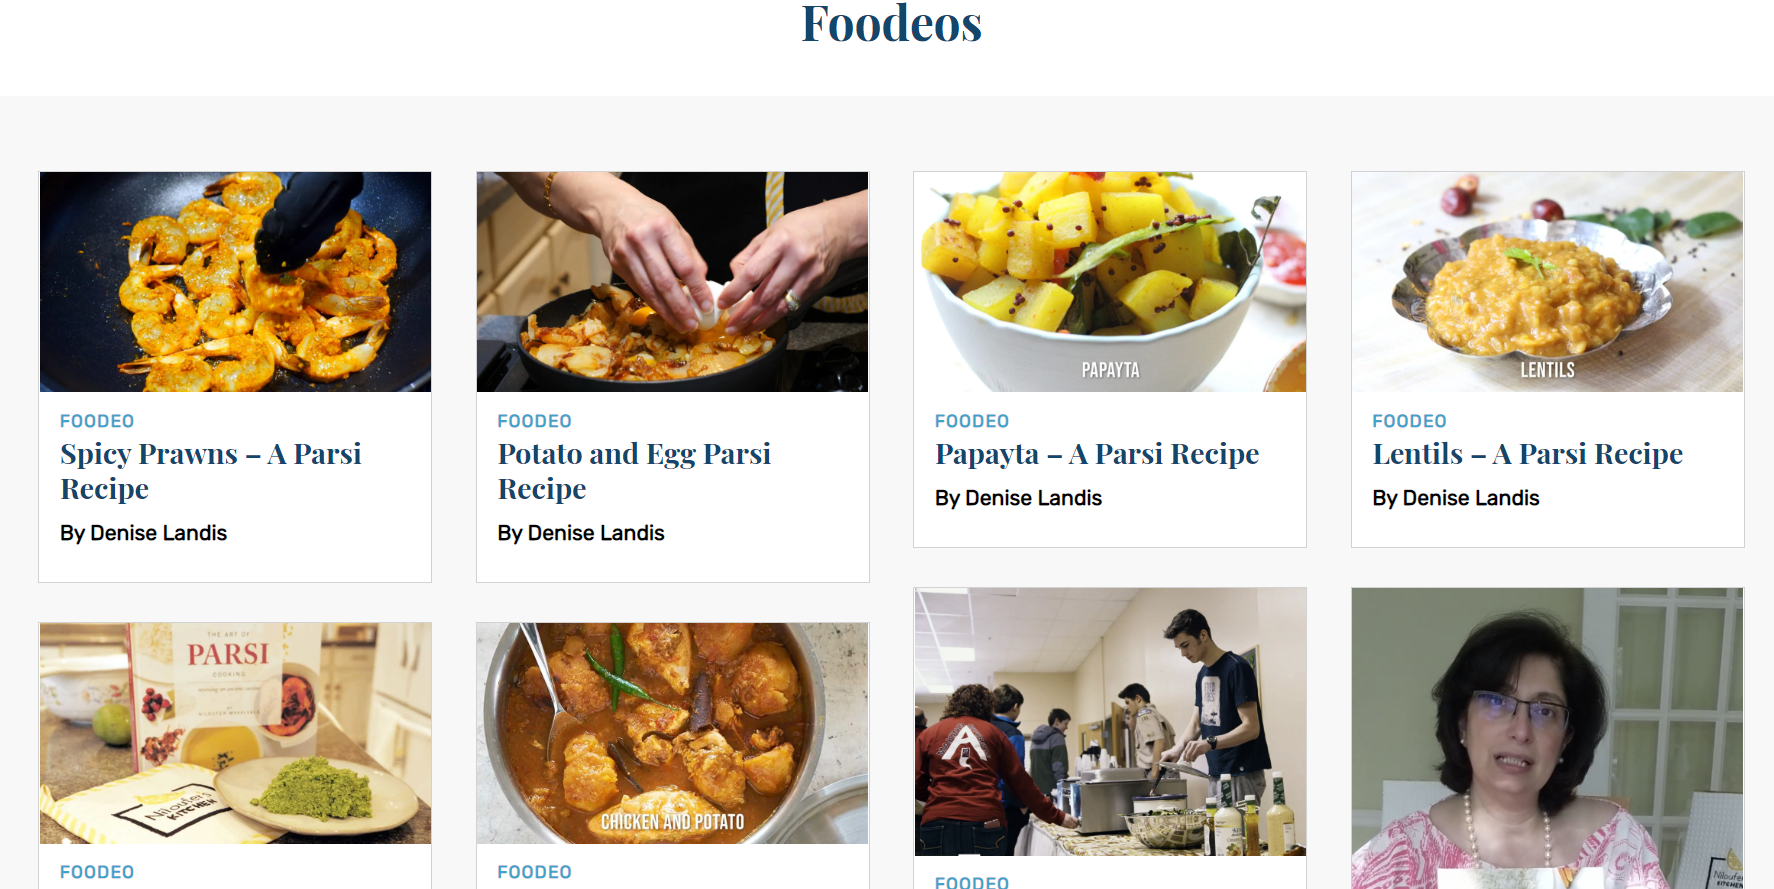 Niloufer Mavalvala’s Food videos featured on FOODEOS